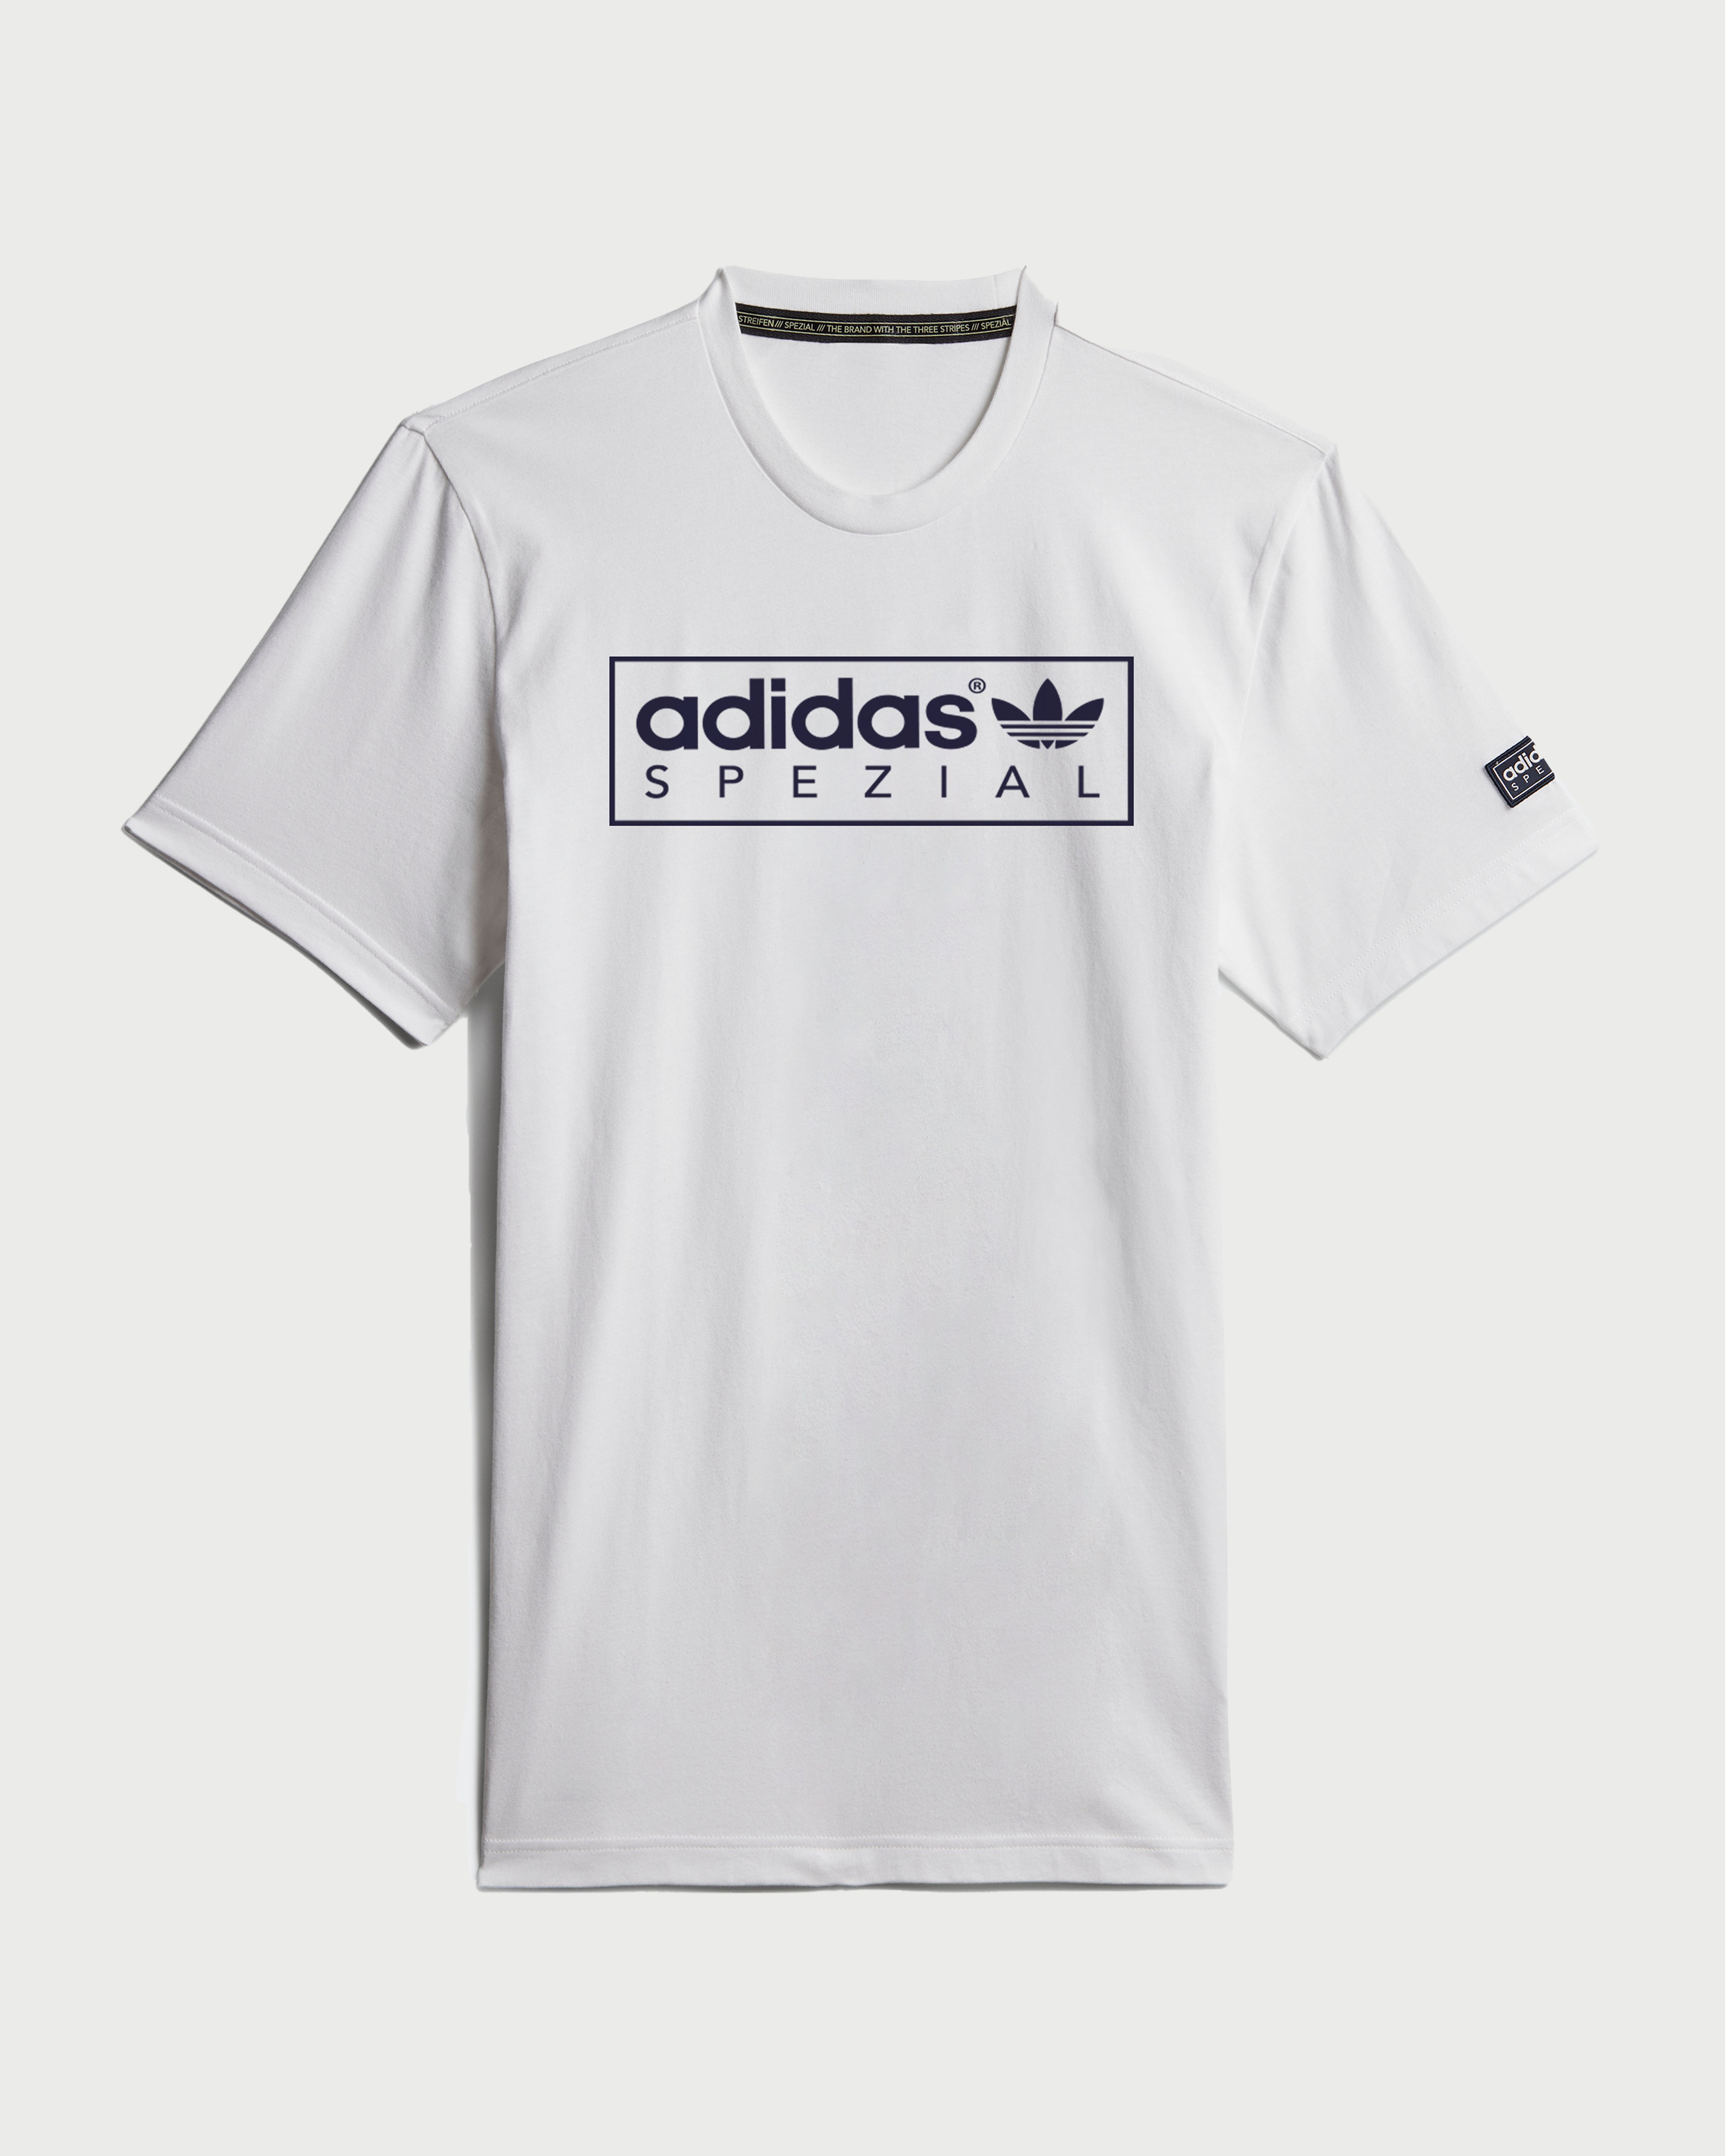 Adidas - Tee Nord Spezial White - Clothing - White - Image 1